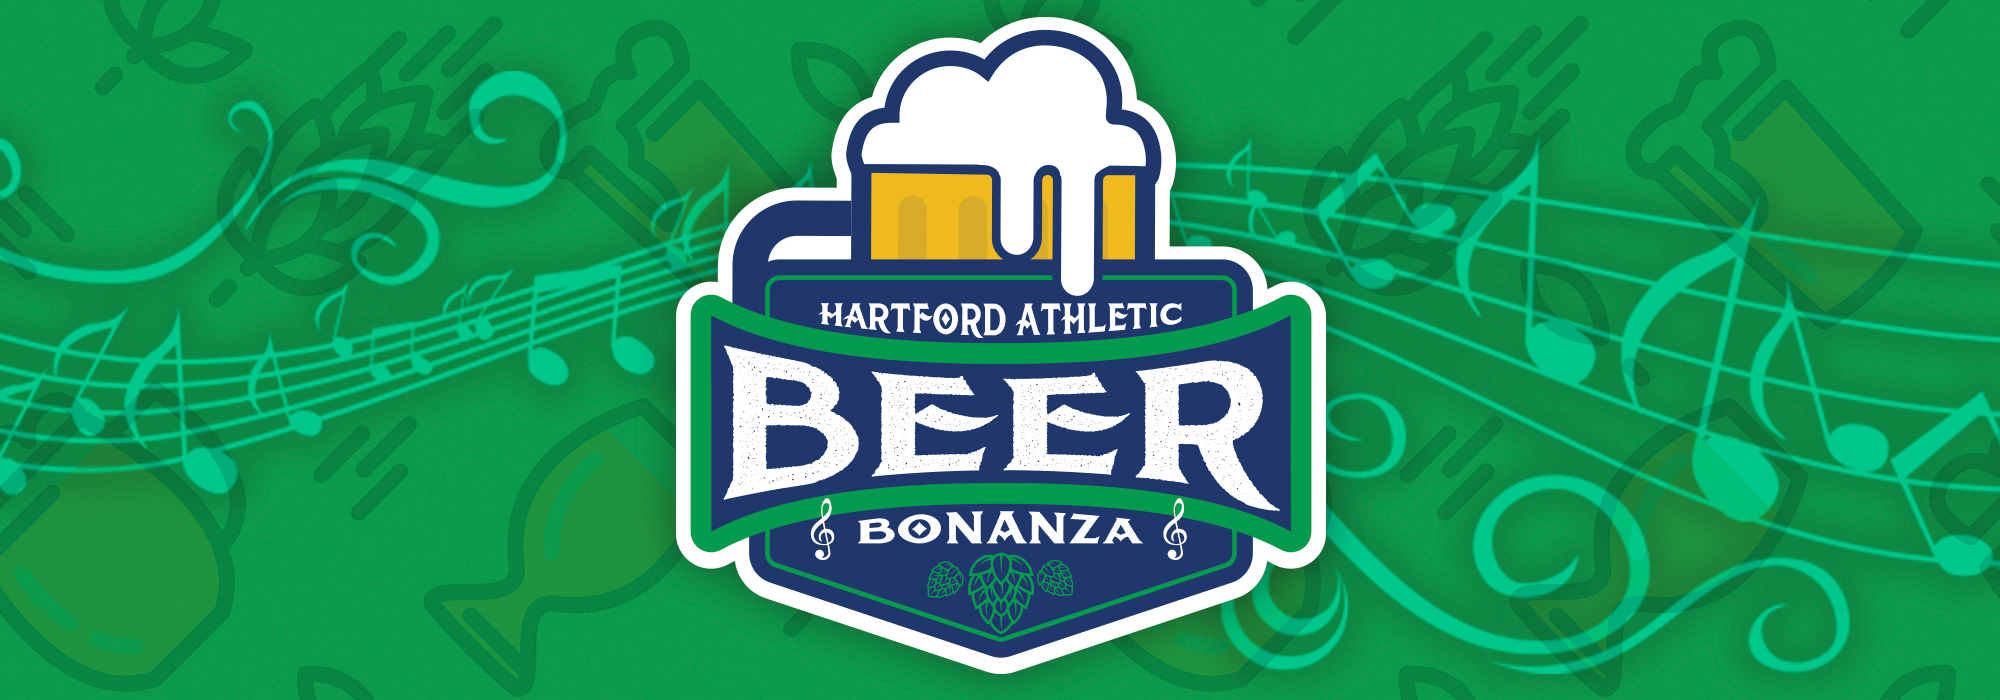 A Hartford Beer Bonanza live event